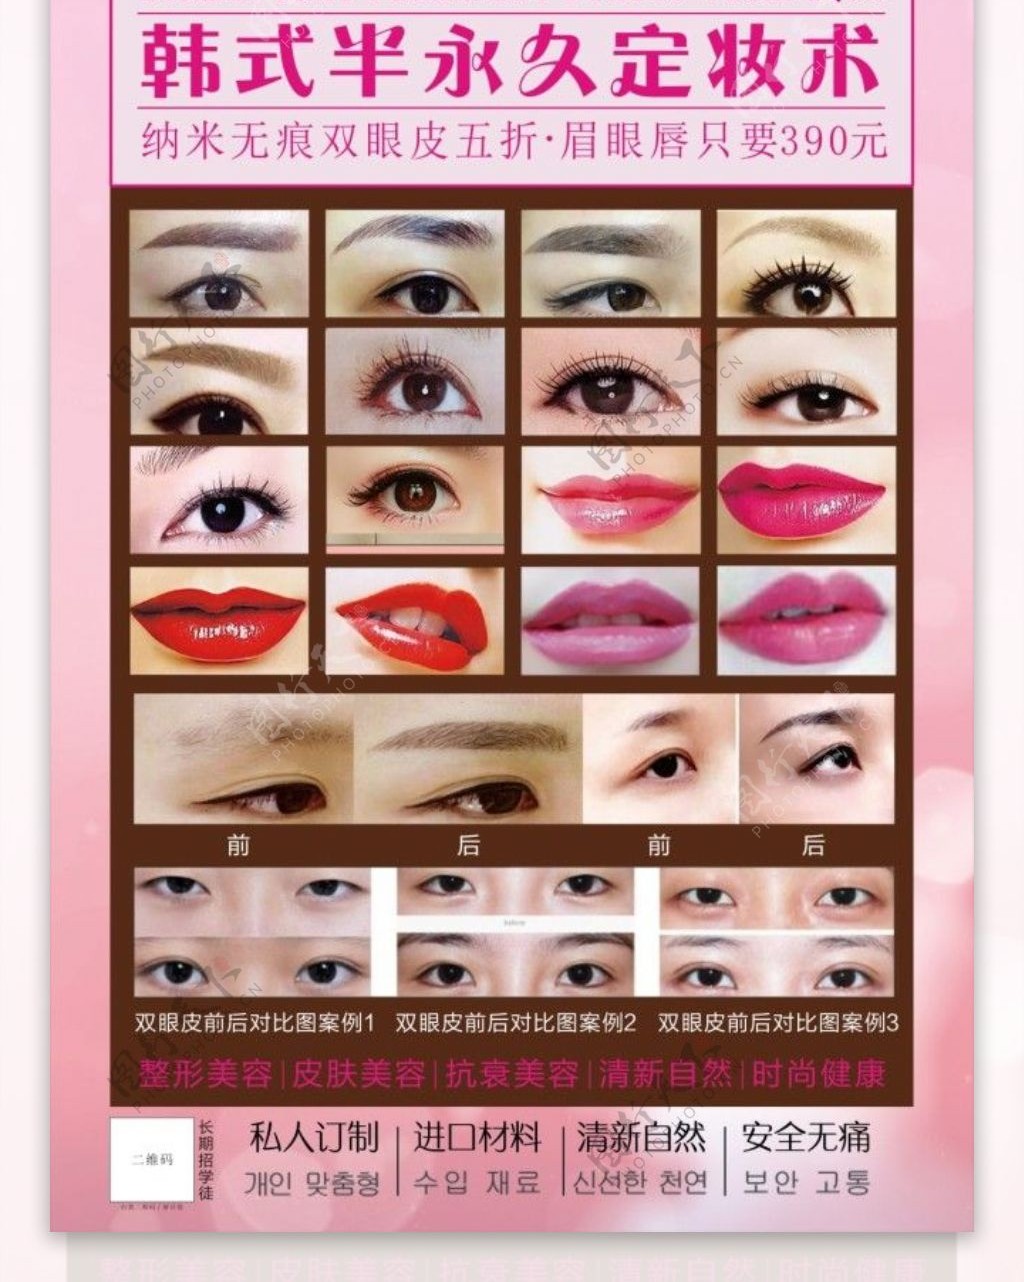 韩式半永久定妆术展板